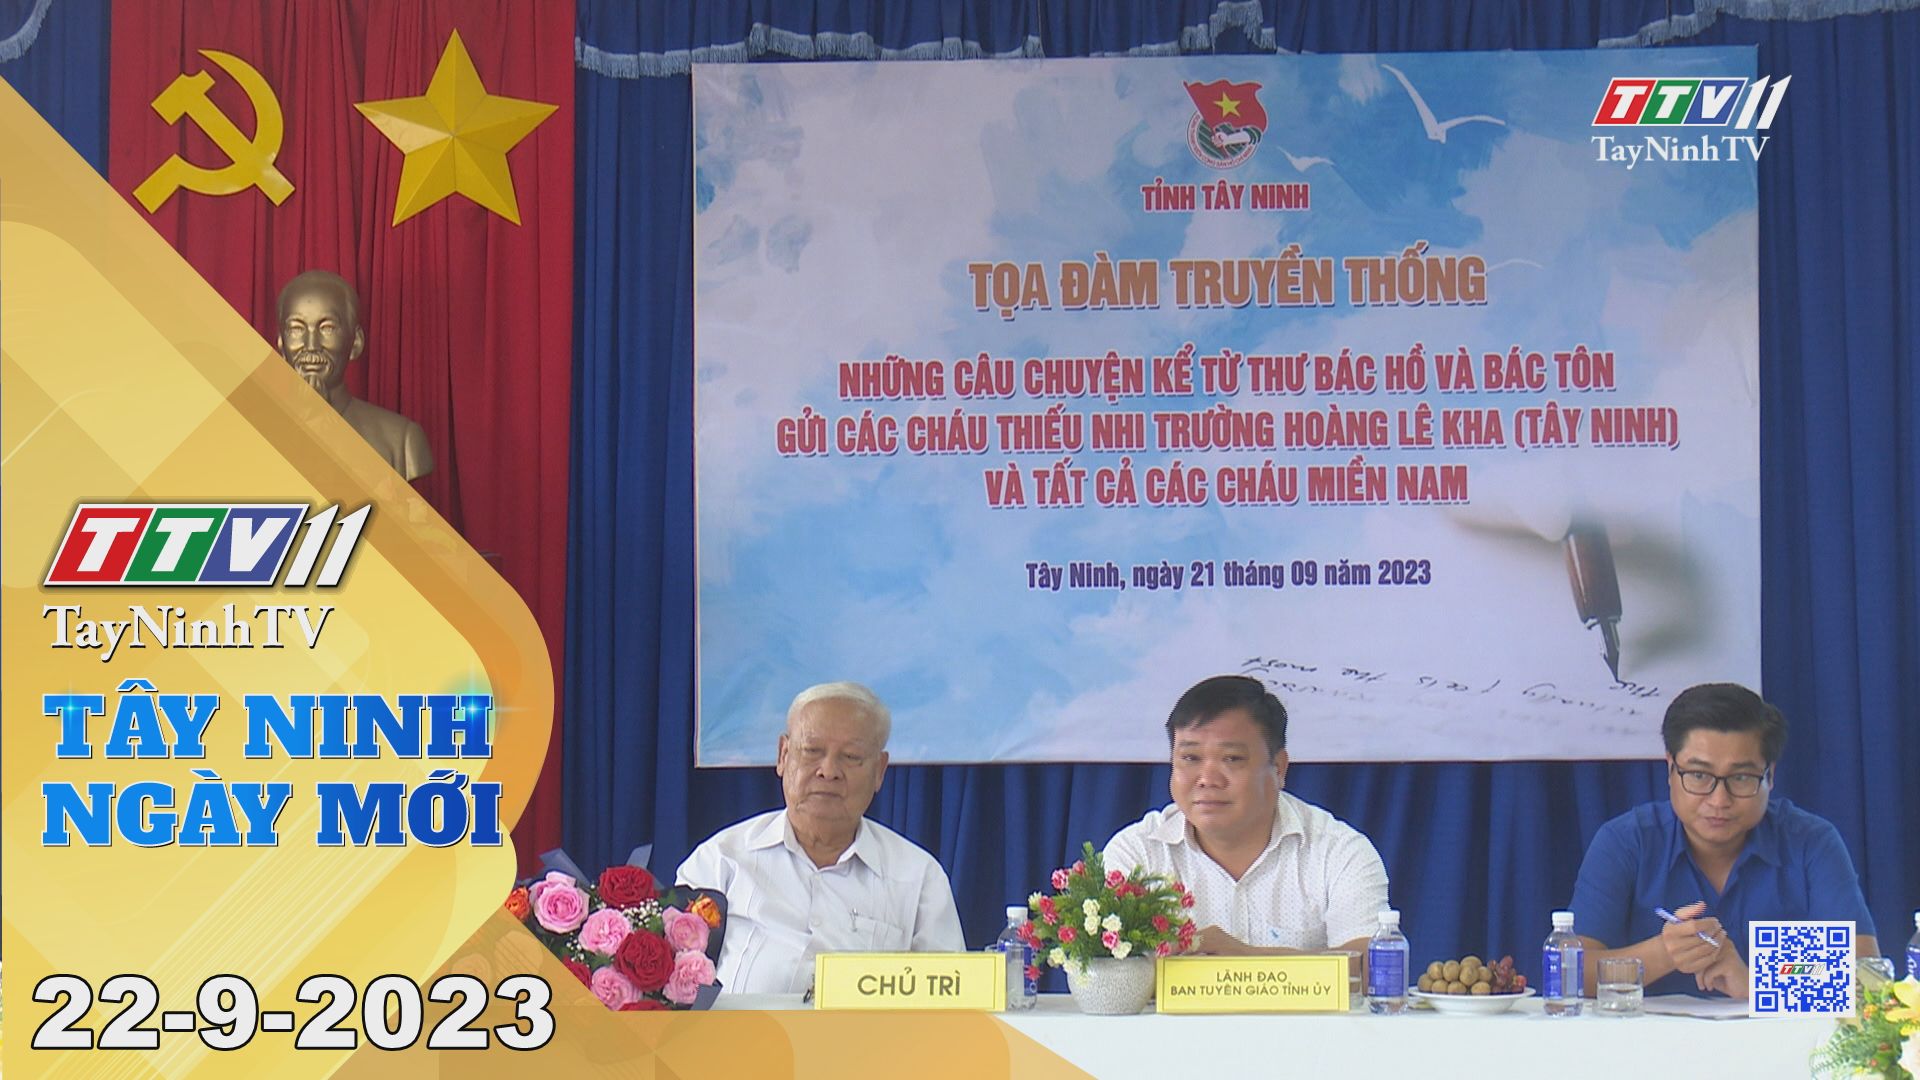 Tây Ninh ngày mới 22-9-2023 | Tin tức hôm nay | TayNinhTV